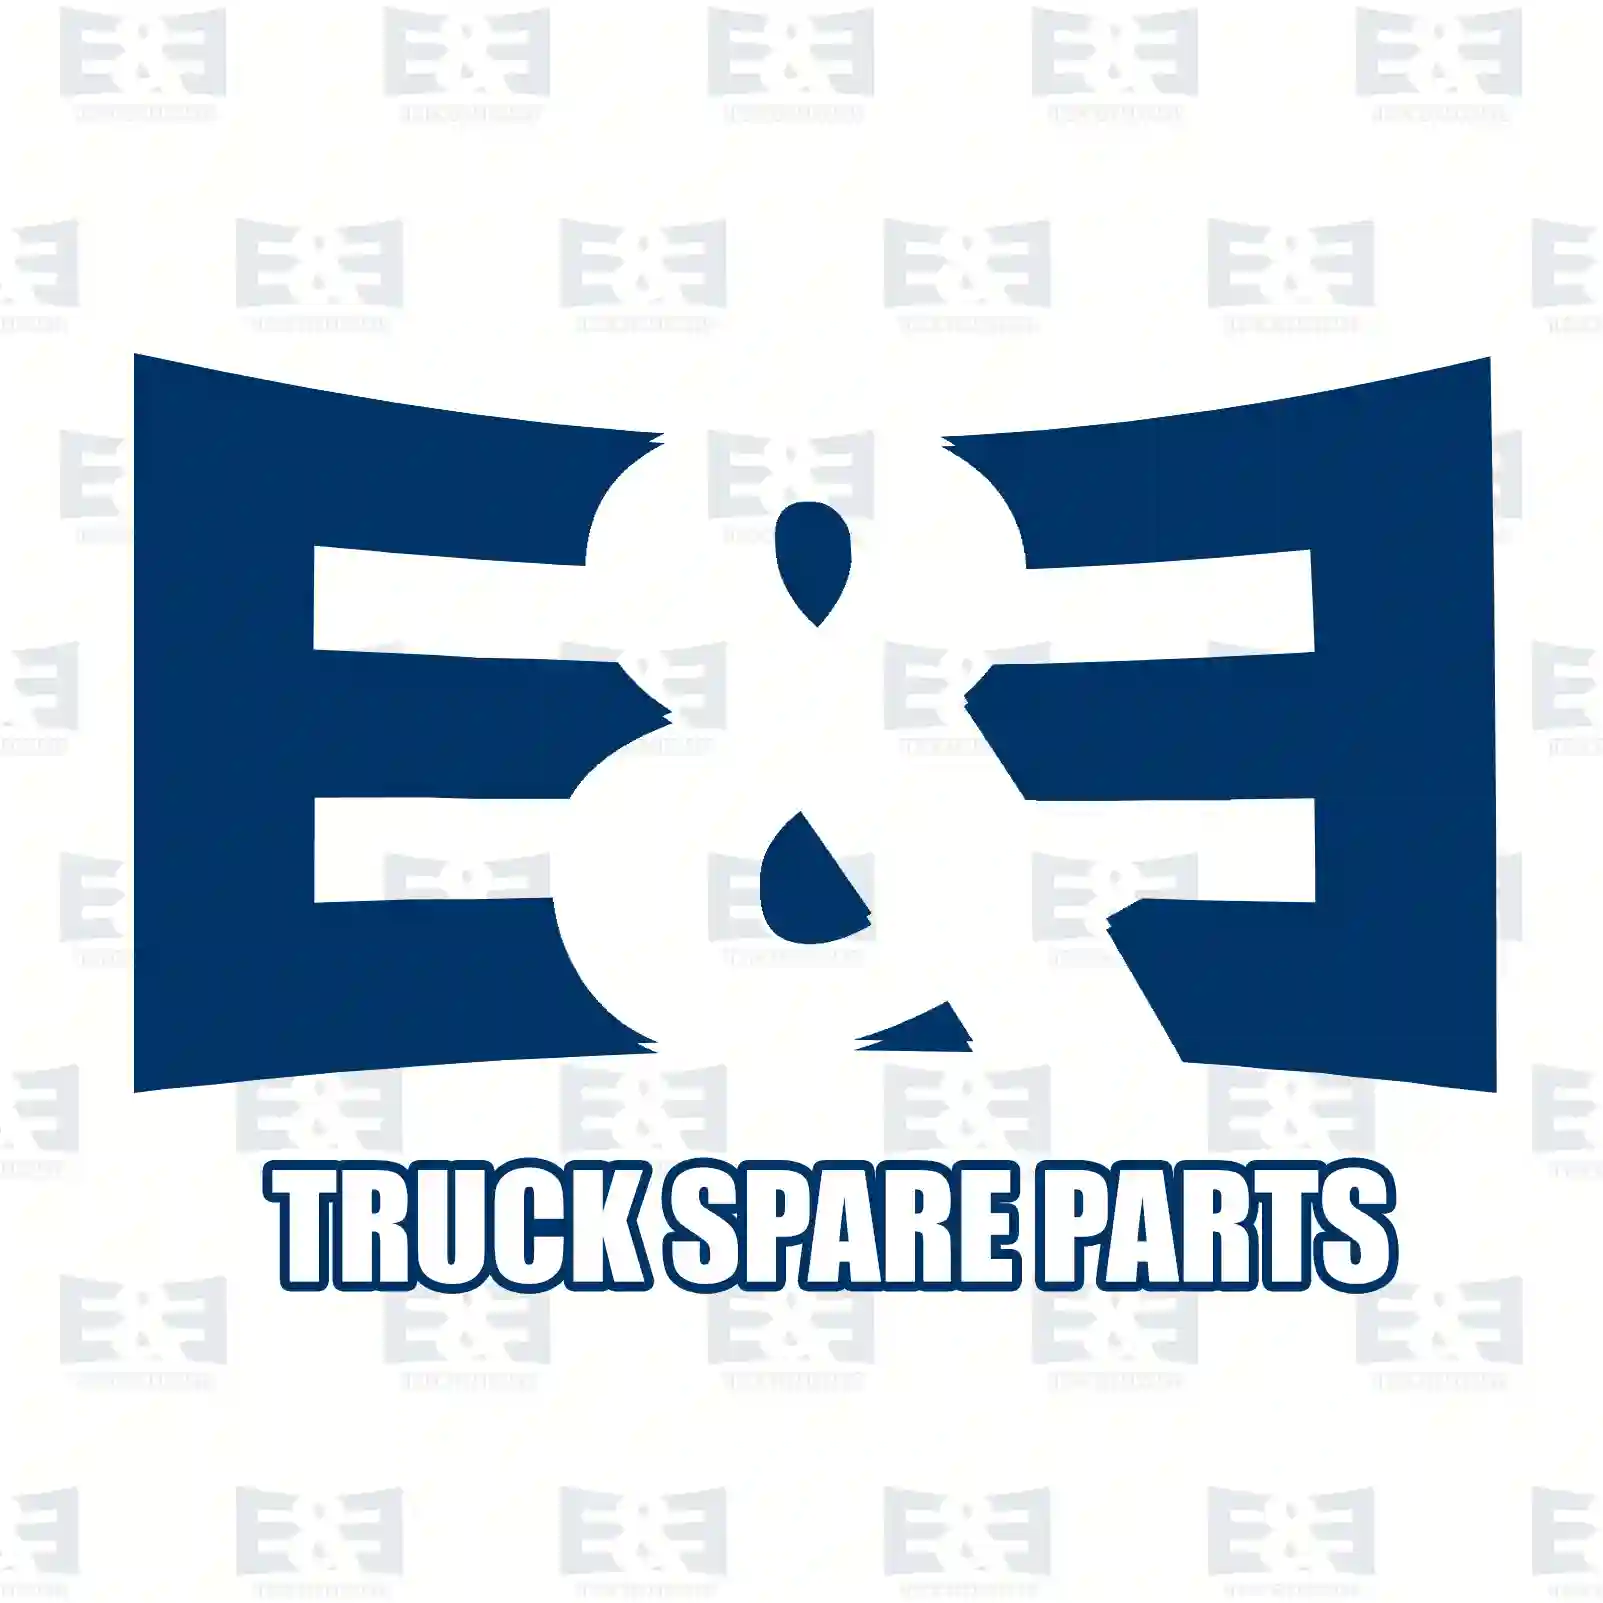 Exhaust brake, complete, 2E2208173, 1386601 ||  2E2208173 E&E Truck Spare Parts | Truck Spare Parts, Auotomotive Spare Parts Exhaust brake, complete, 2E2208173, 1386601 ||  2E2208173 E&E Truck Spare Parts | Truck Spare Parts, Auotomotive Spare Parts